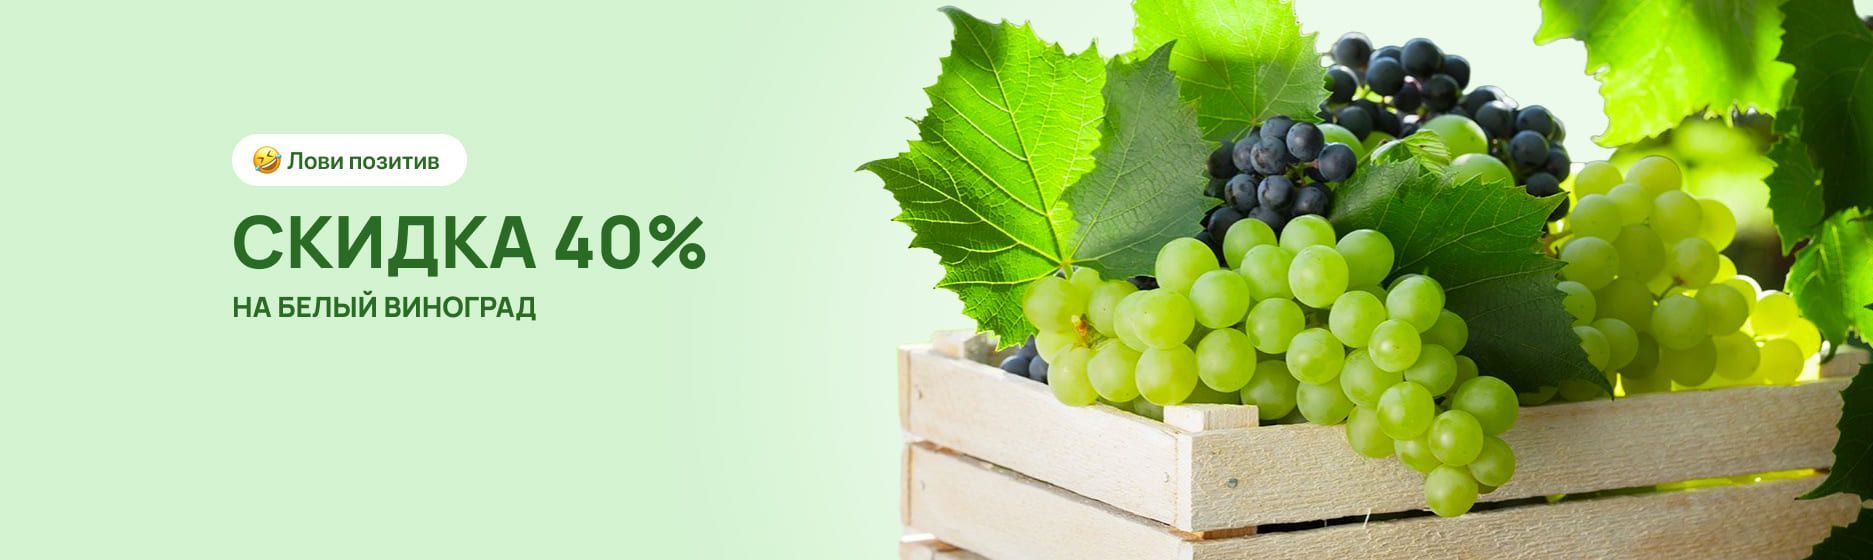 Белый виноград со скидкой 40%